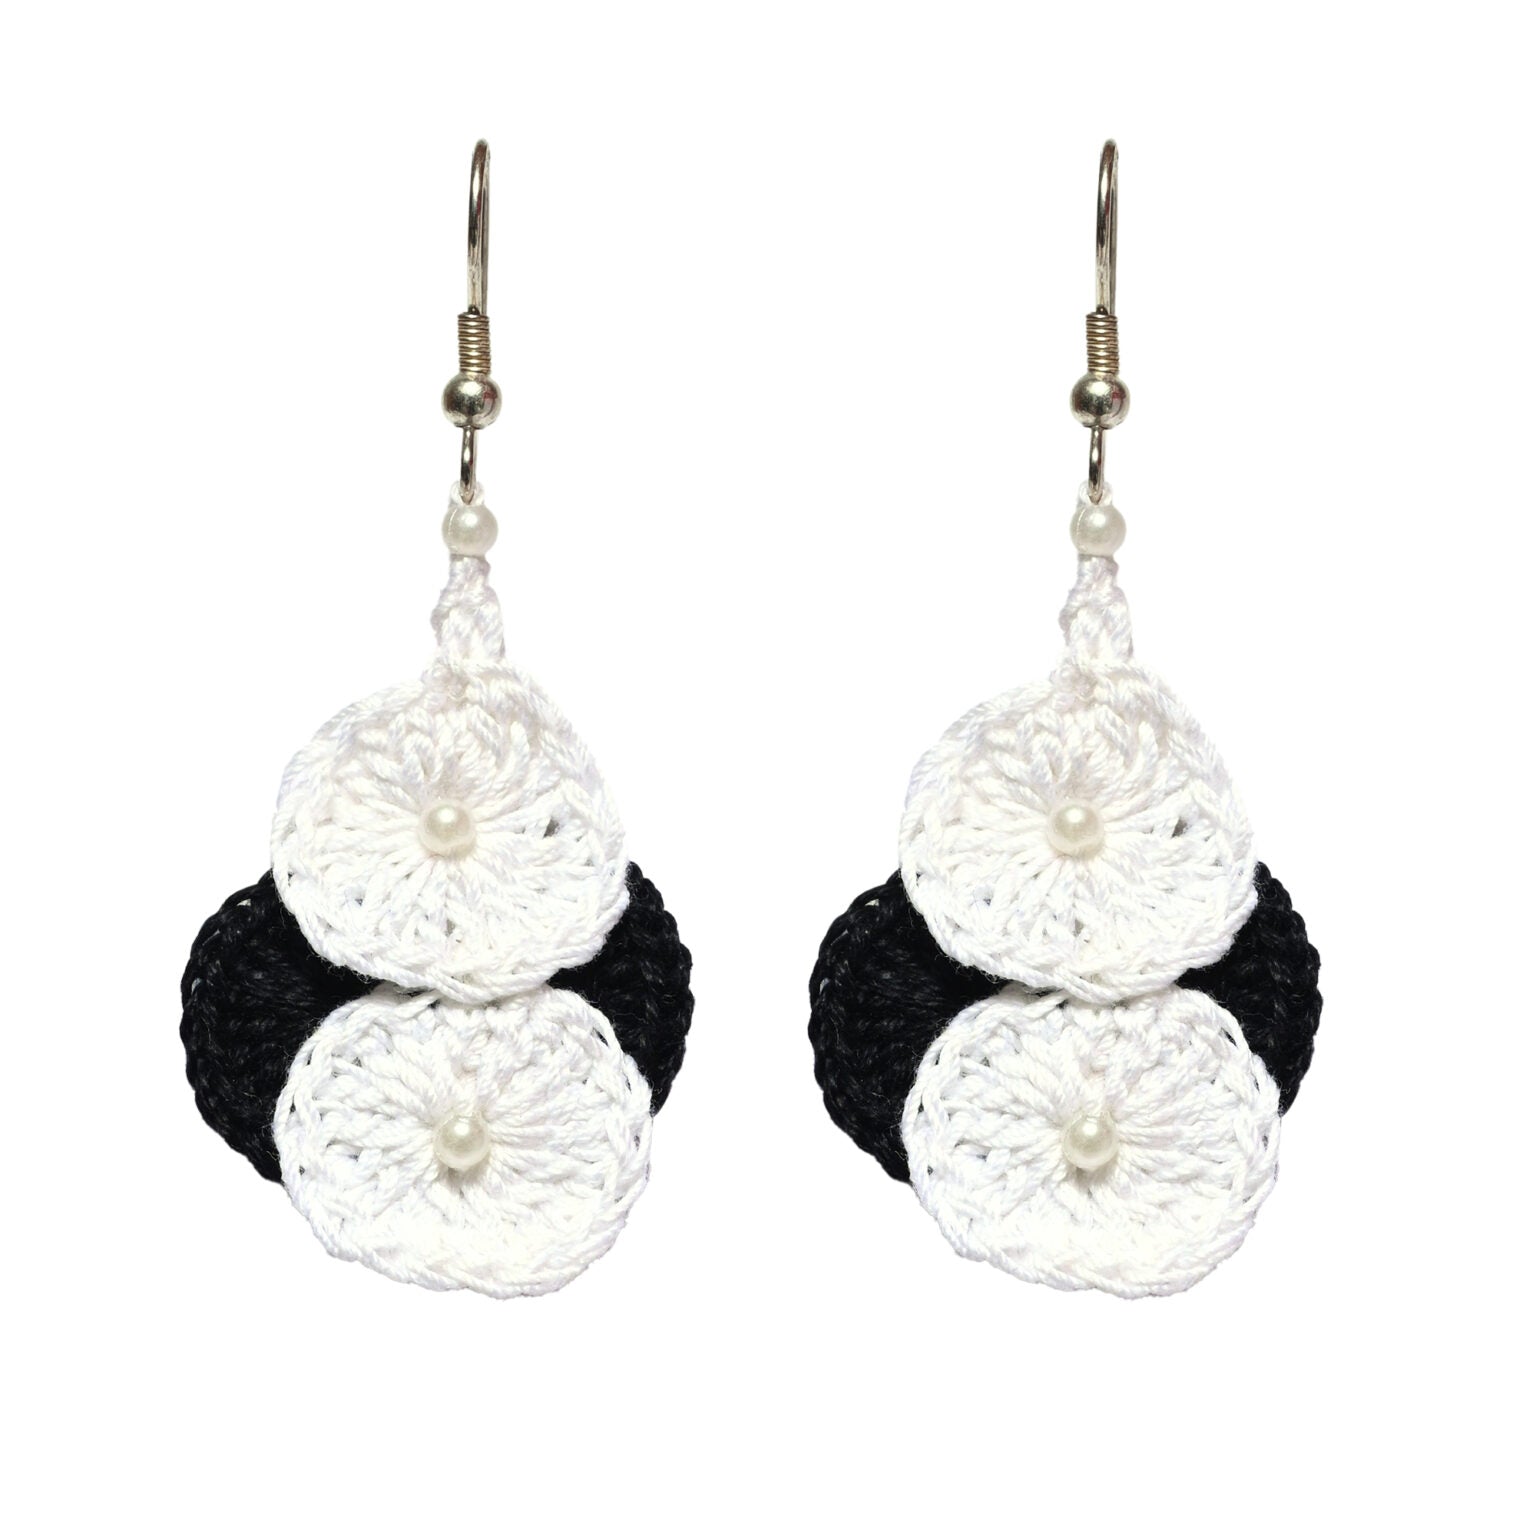 Black and White crochet earring